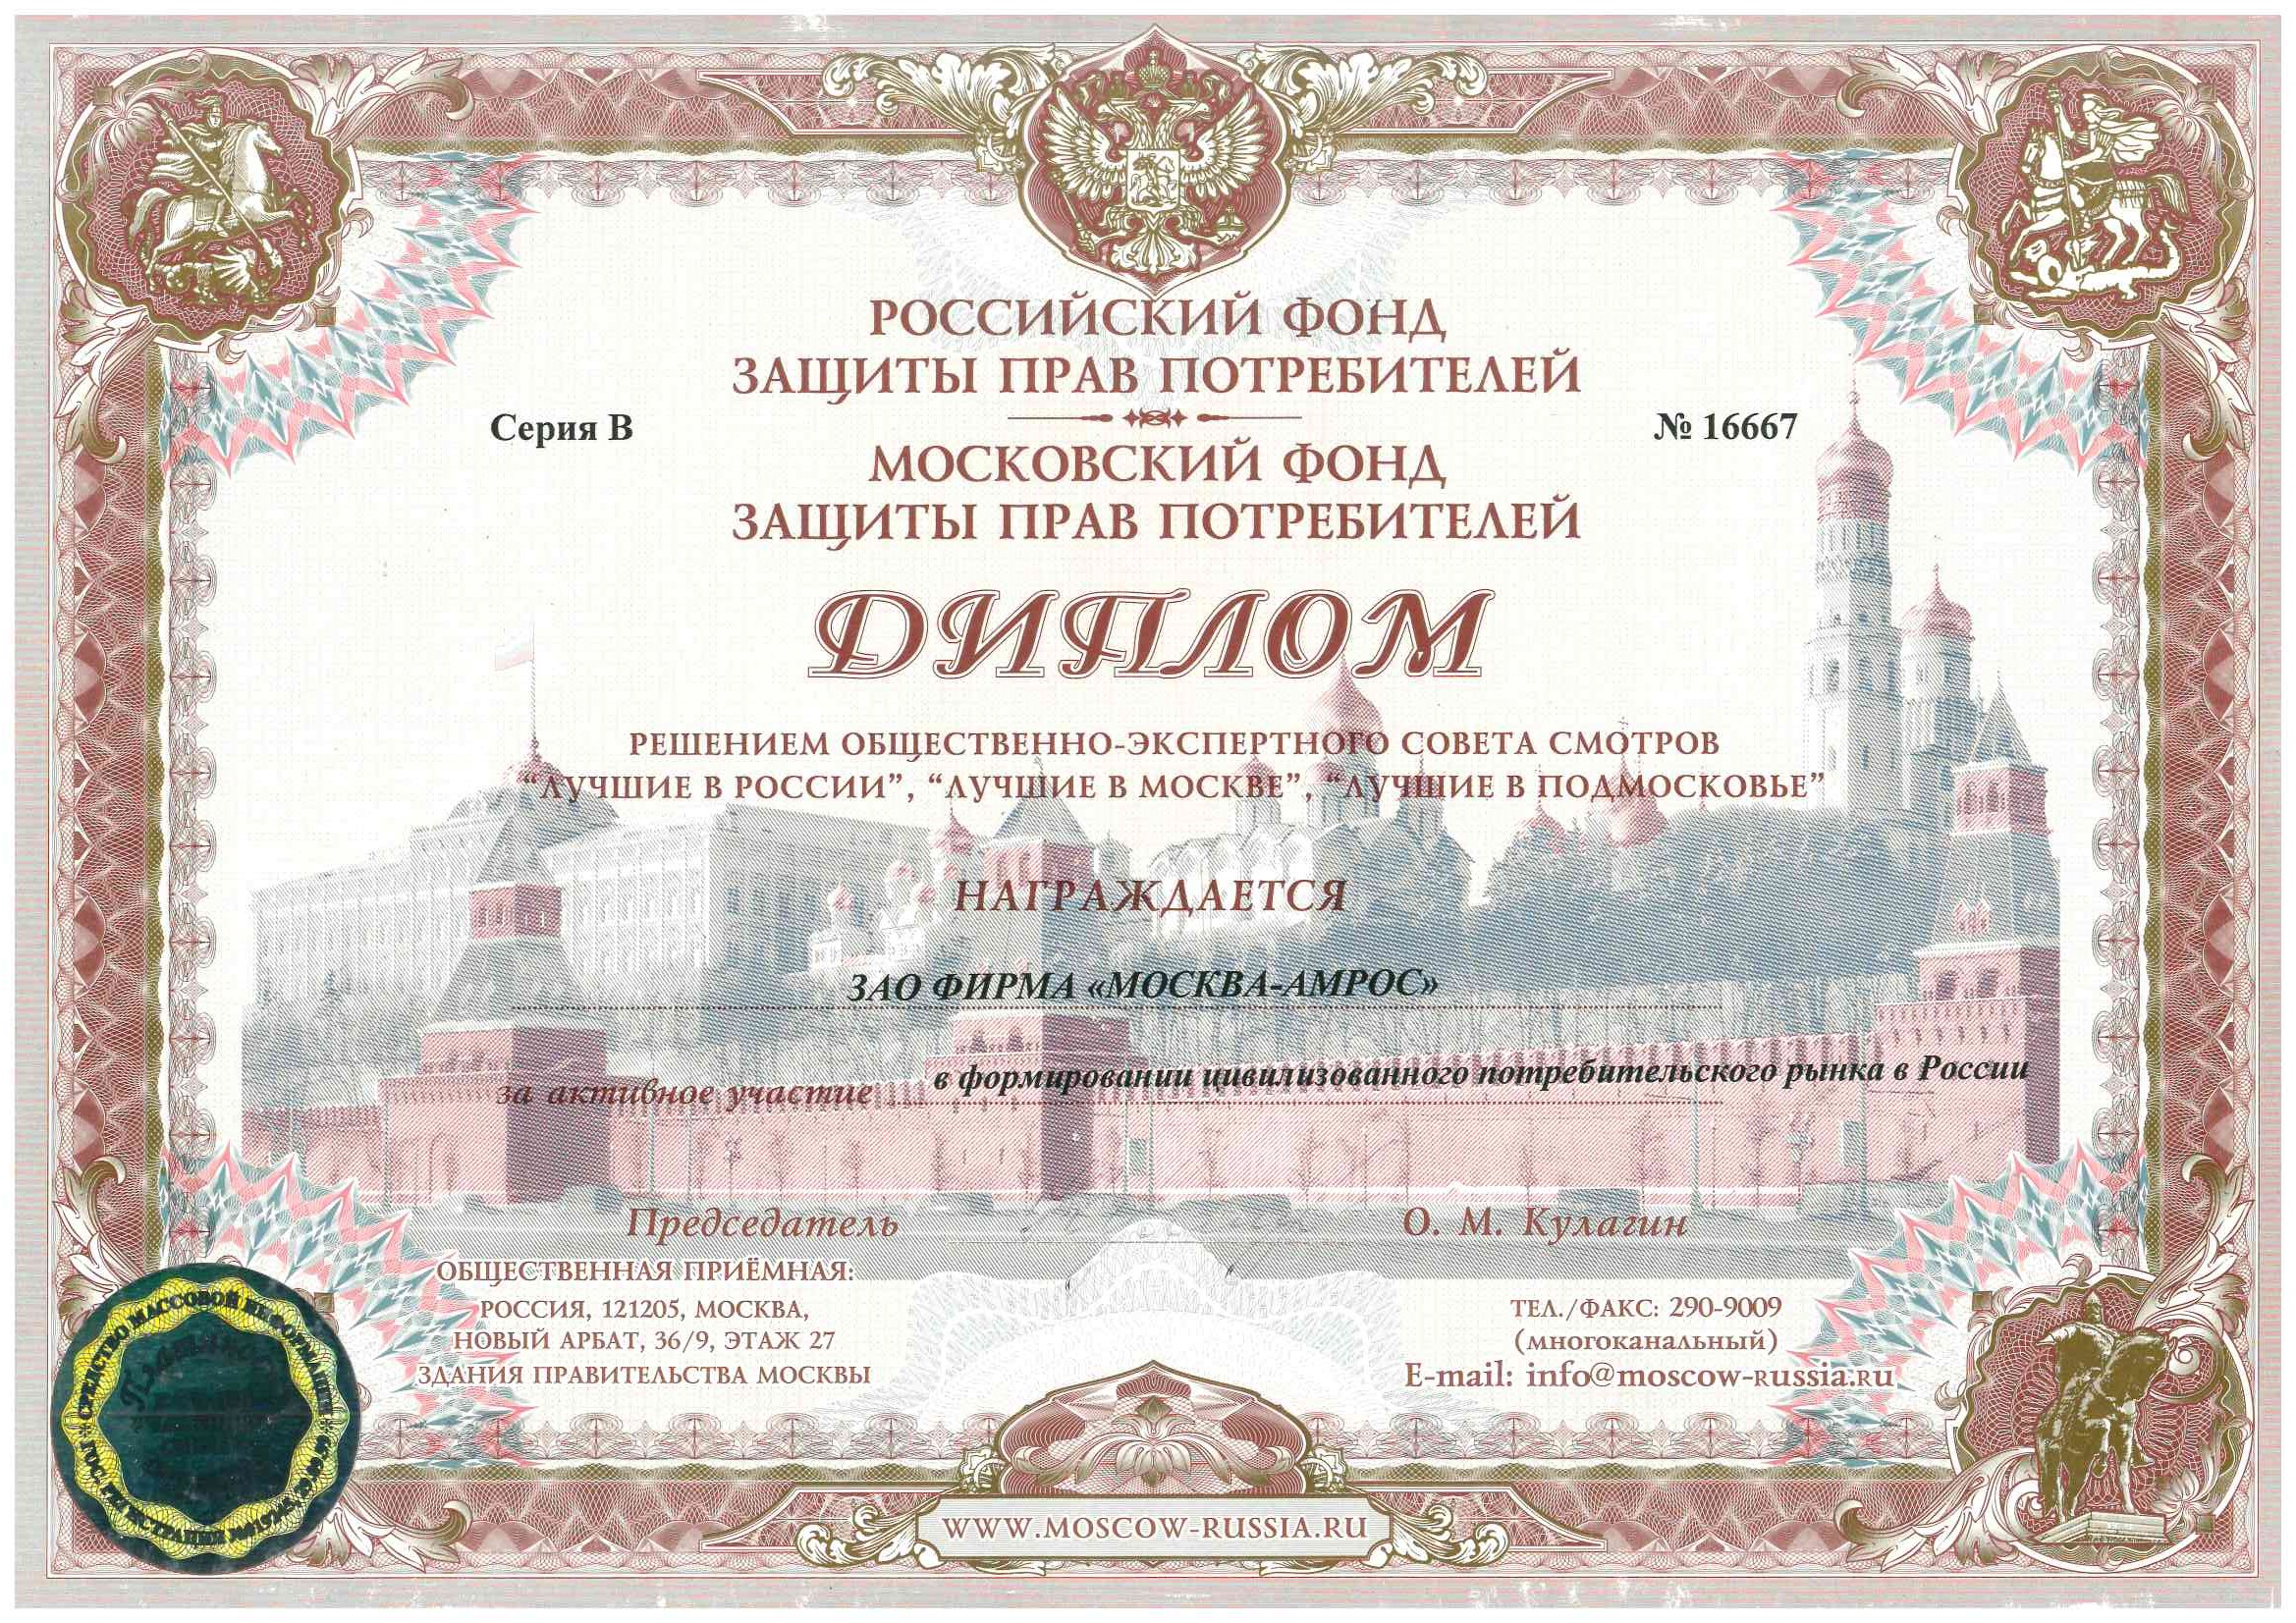 Диплом за активное участии в формировании цивилизованного потребительского рынка в России, 2006 г.